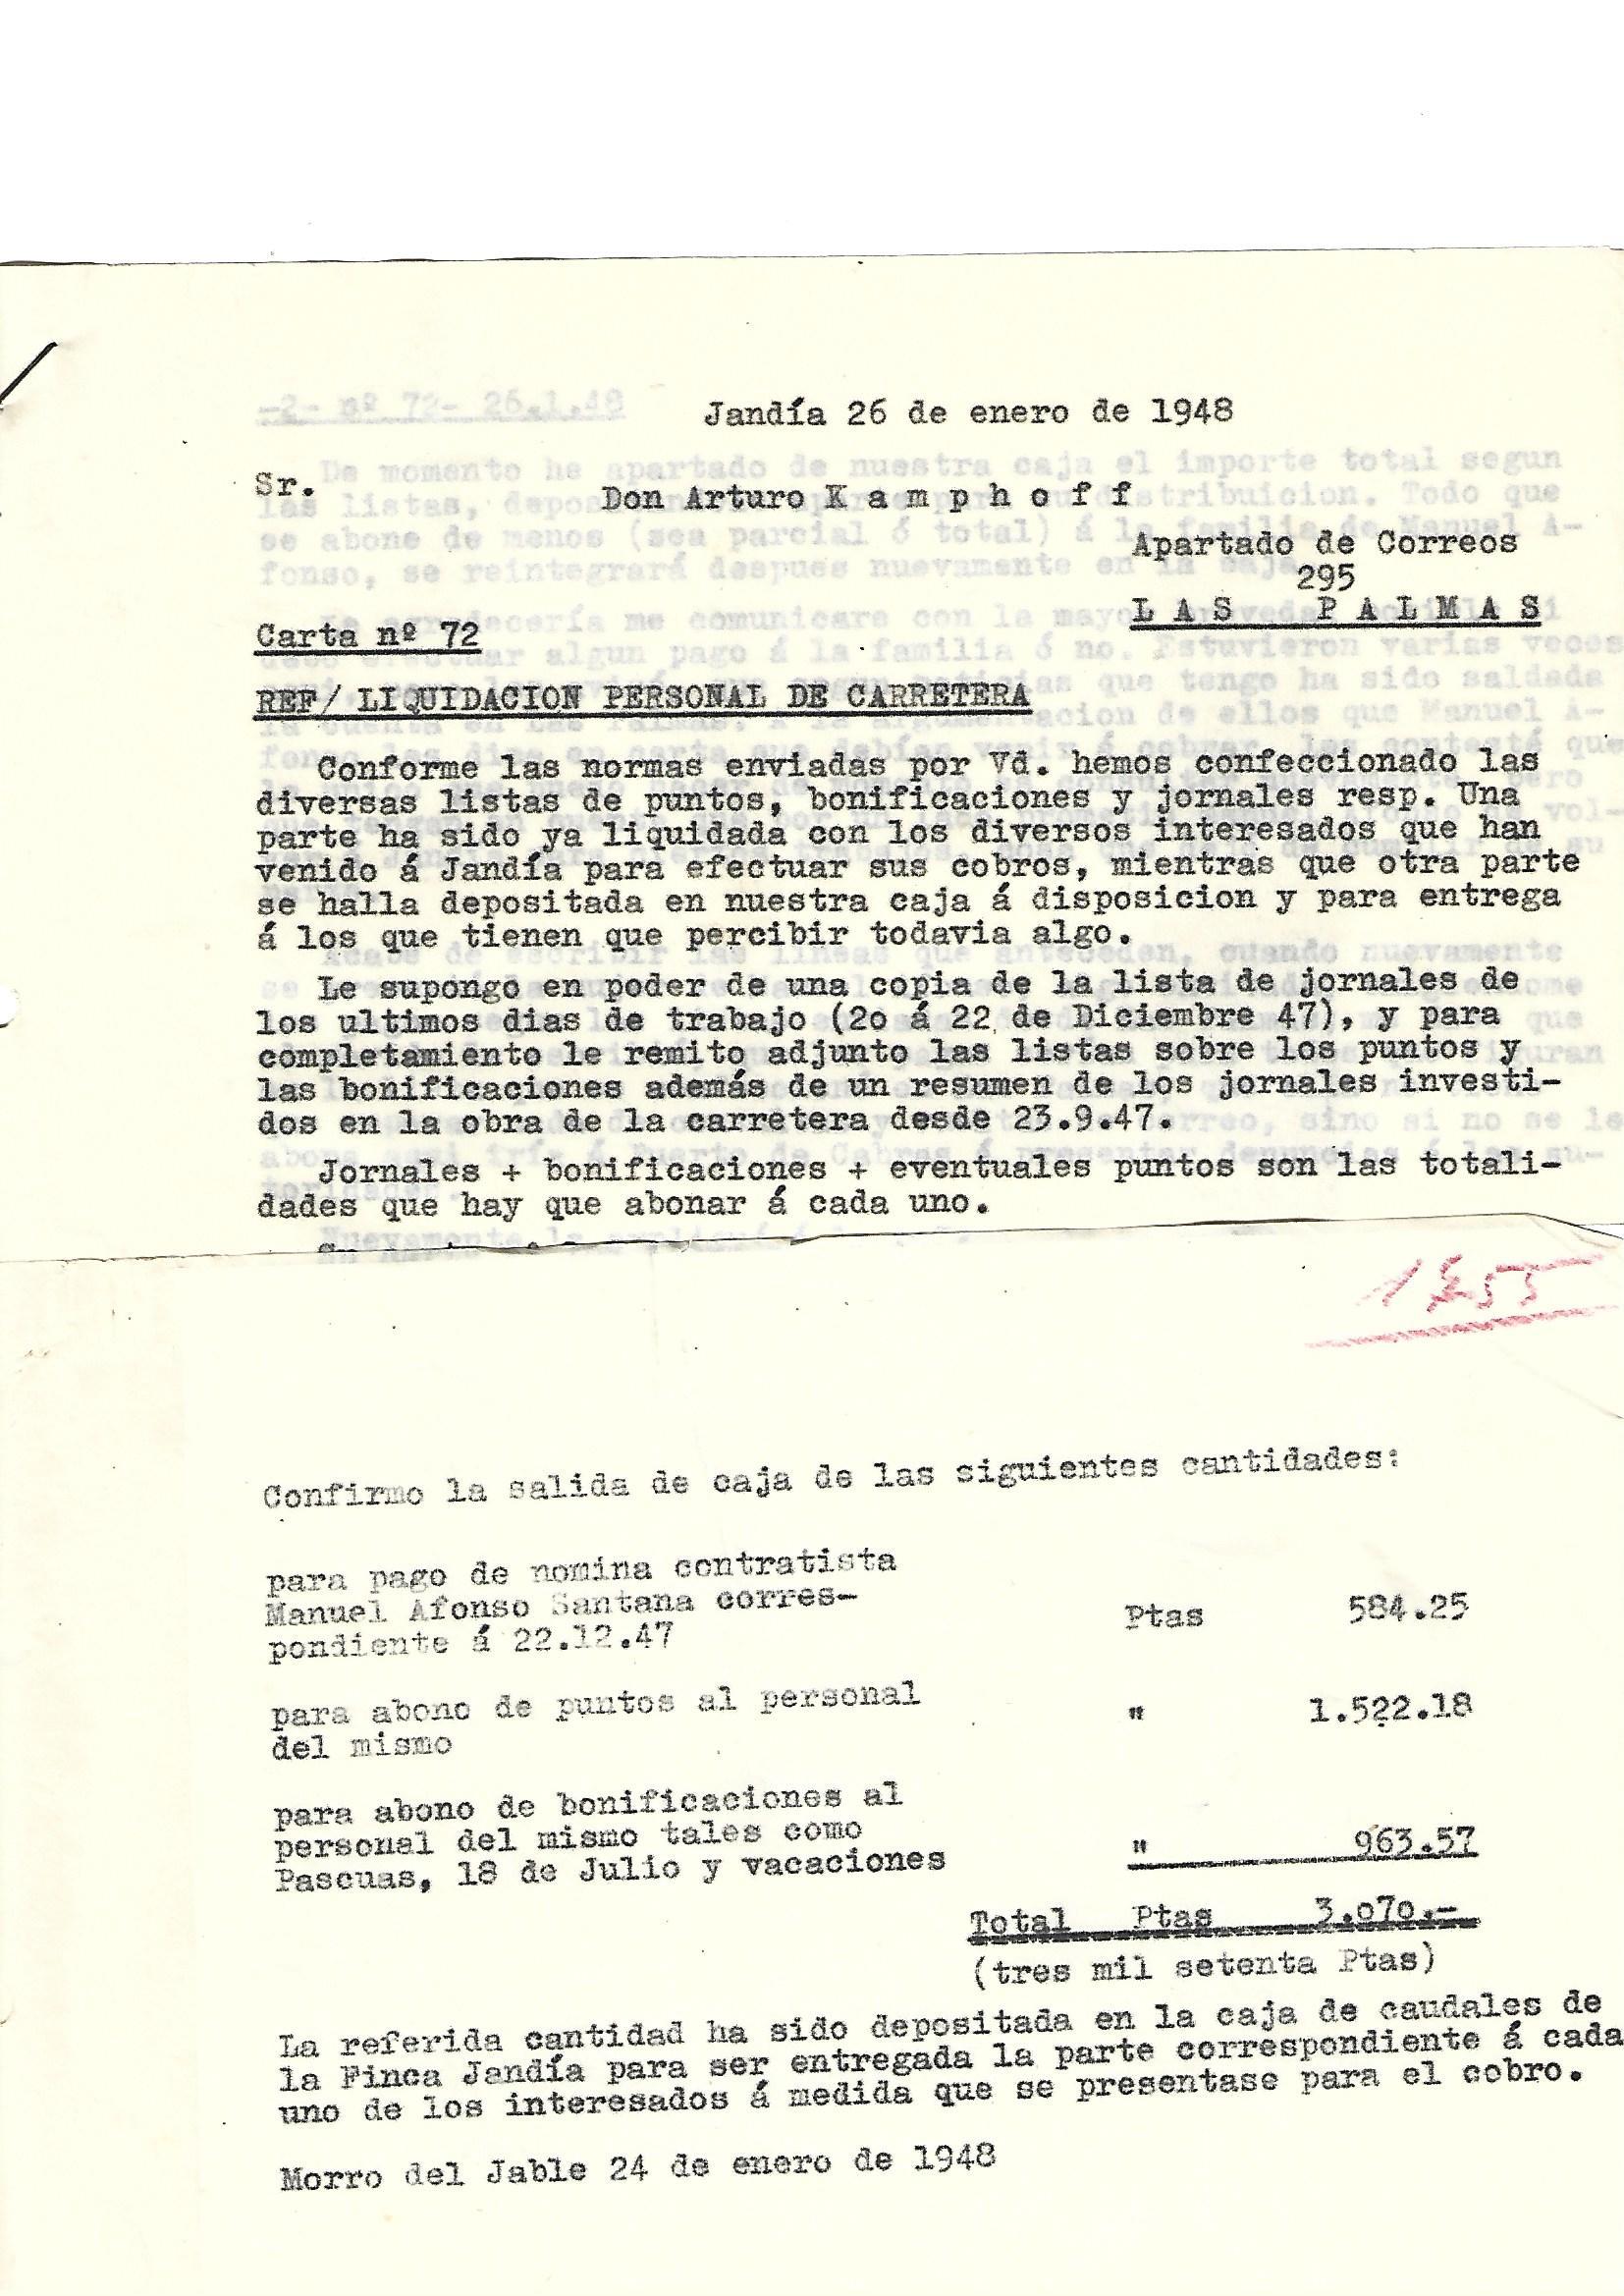 Carta nº 72 - Liquidaciones-Nominas - 24-01-1948.pdf